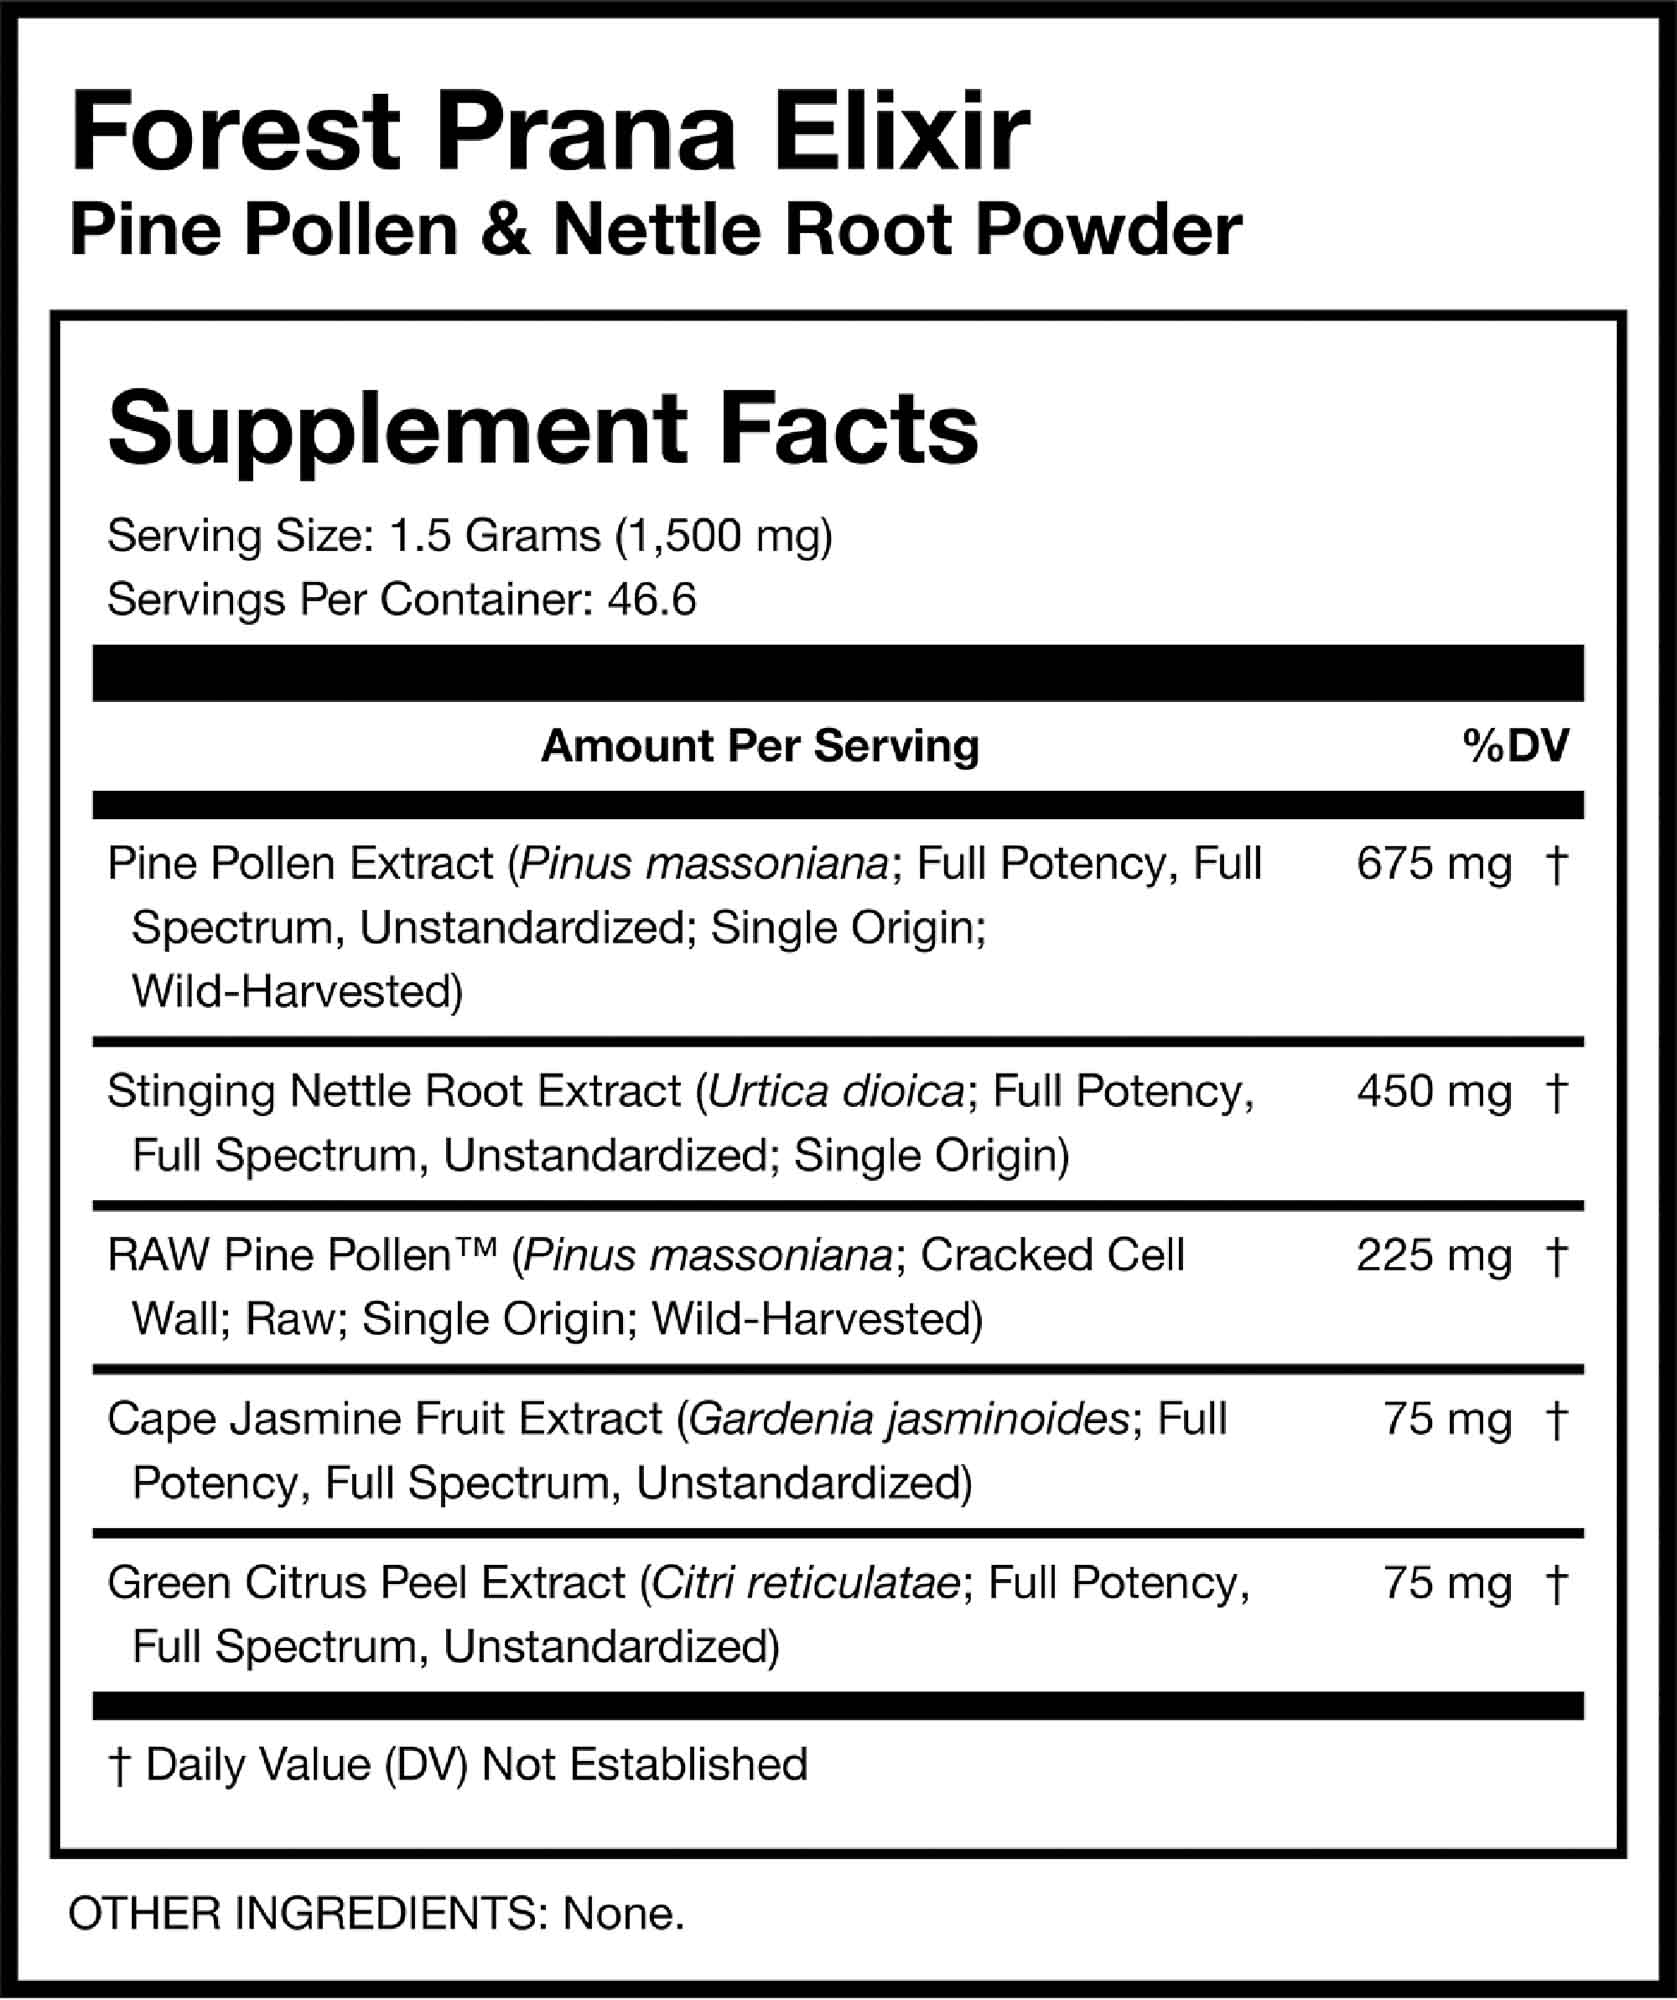 Forest Prana Elixir Pine Pollen & Nettle Root Powder Supplement Facts Card